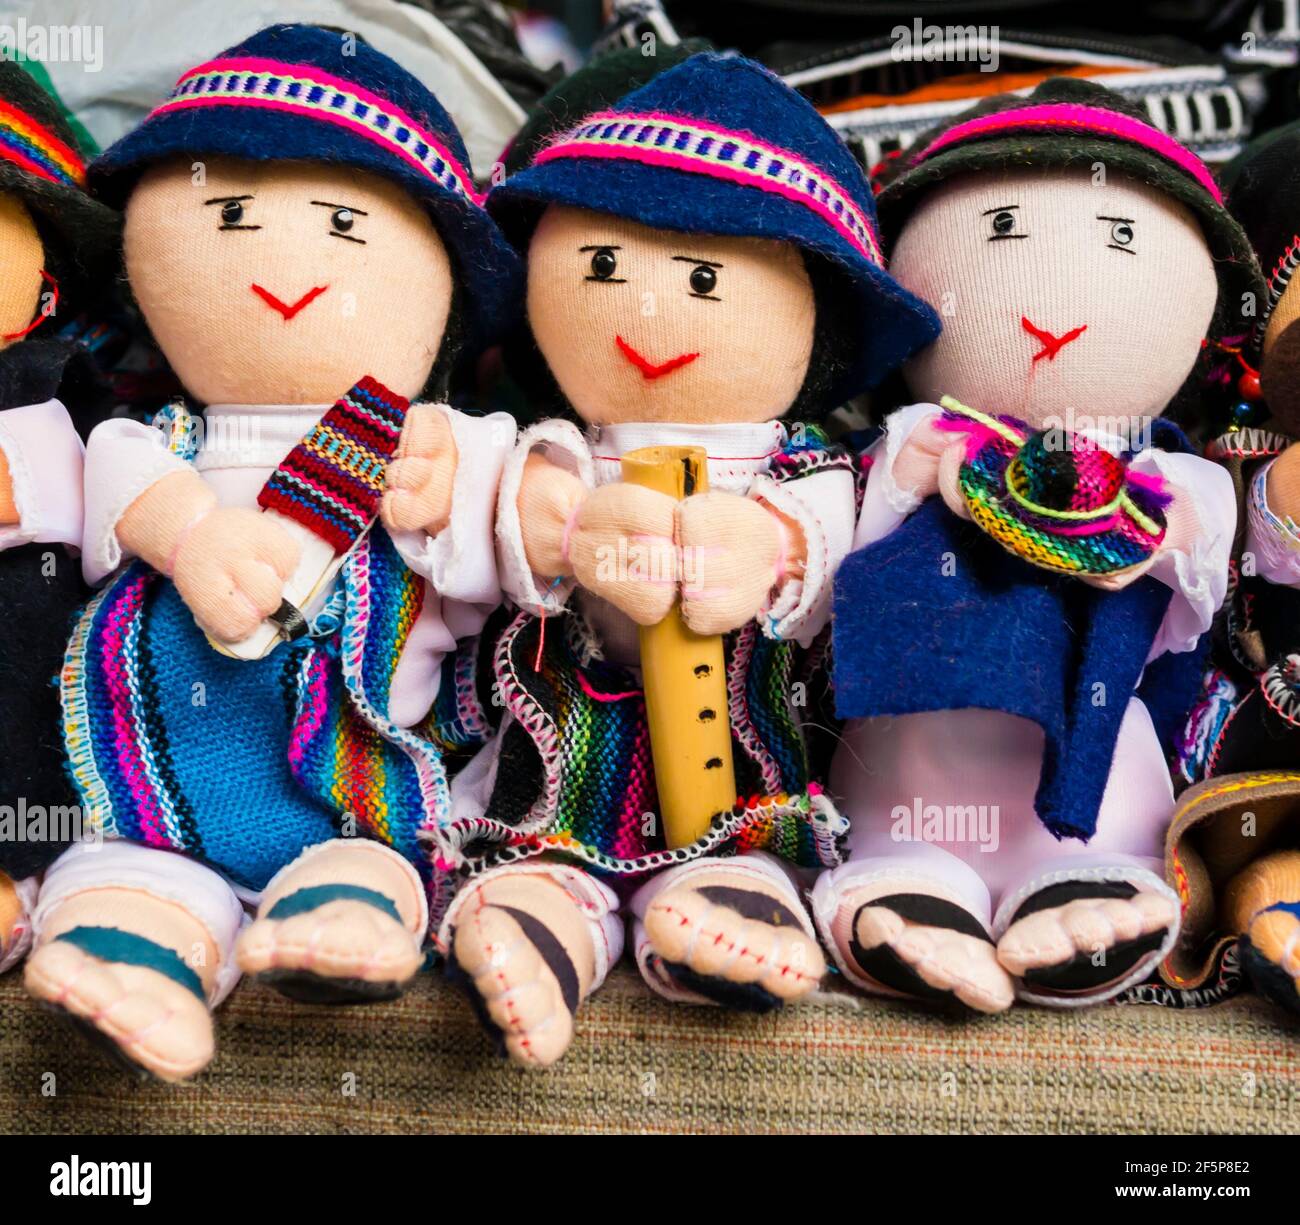 Particolare di bambole di straccio maschile in abiti tradizionali che suonano strumenti musicali, Otavalo Market, Ecuador Foto Stock